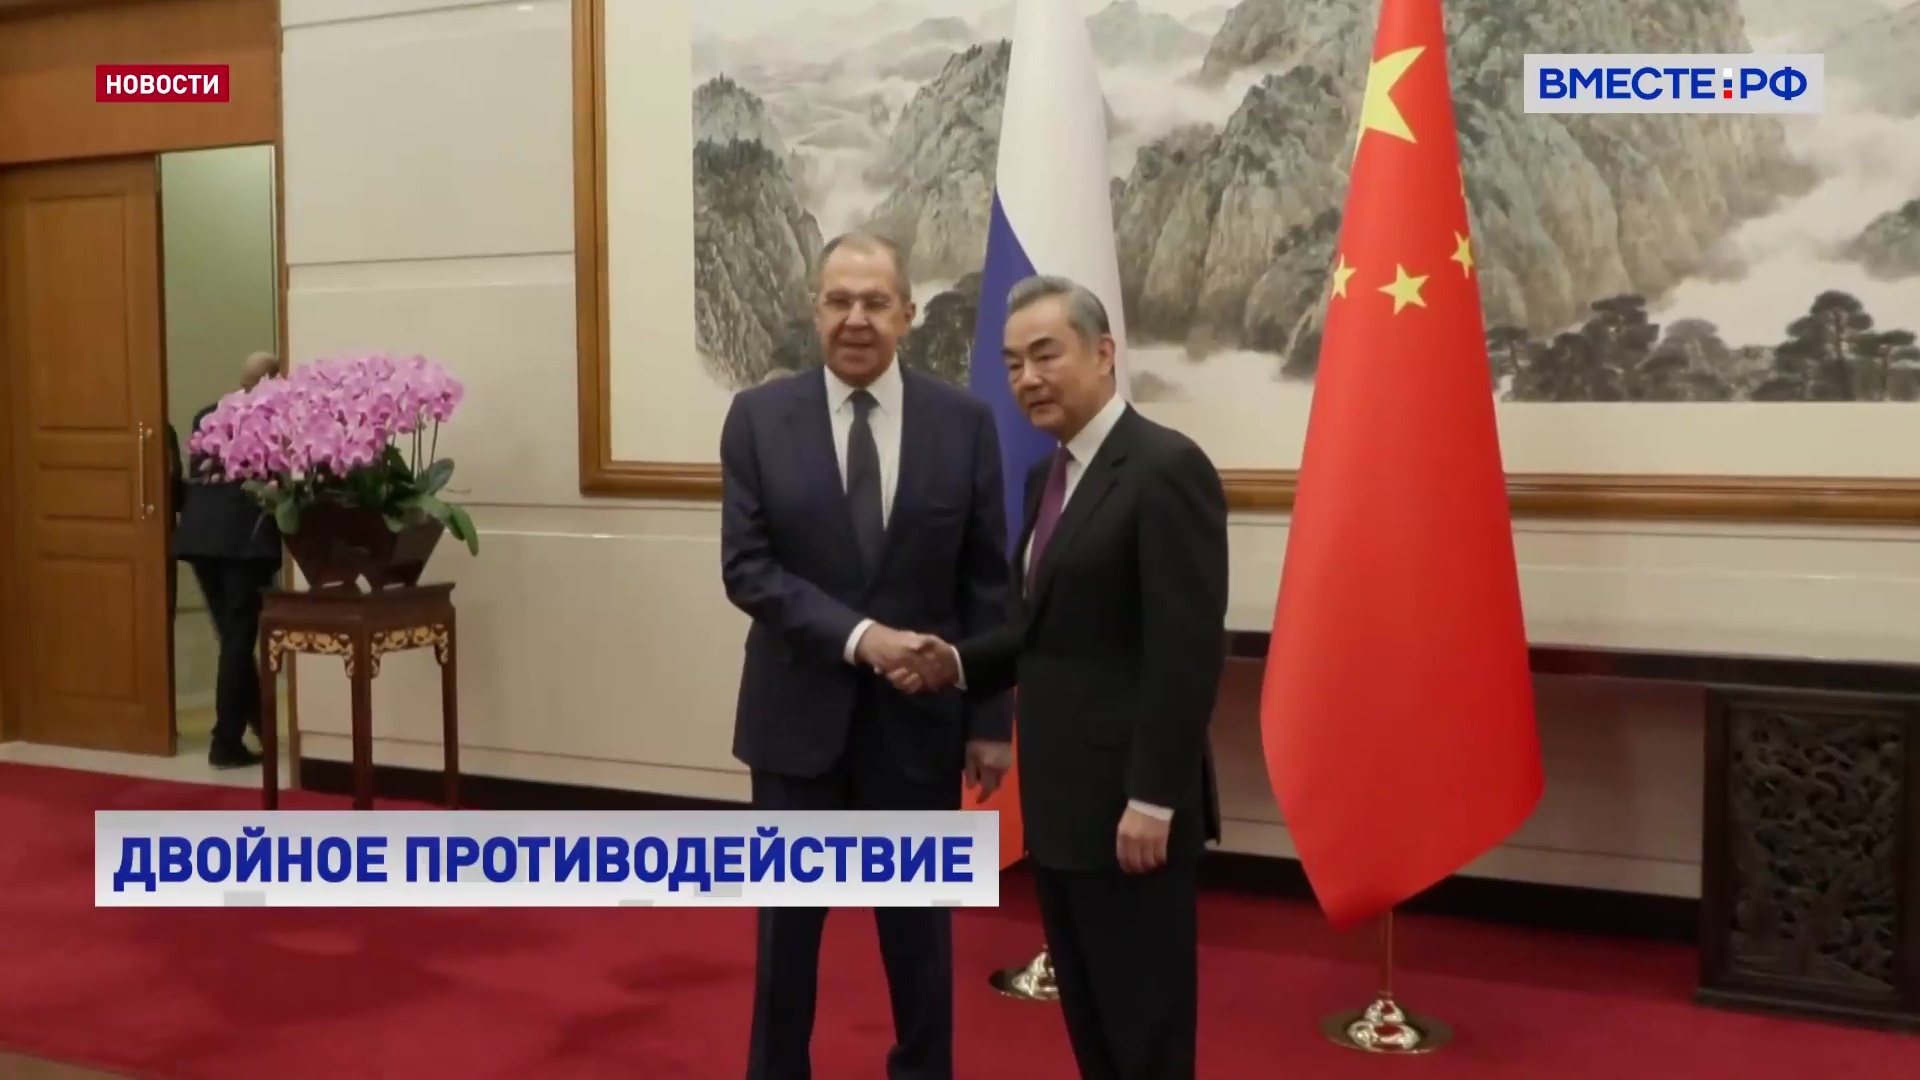 Россия и Китай будут противостоять попыткам затормозить формирование многополярного мира, заявил глава МИД РФ